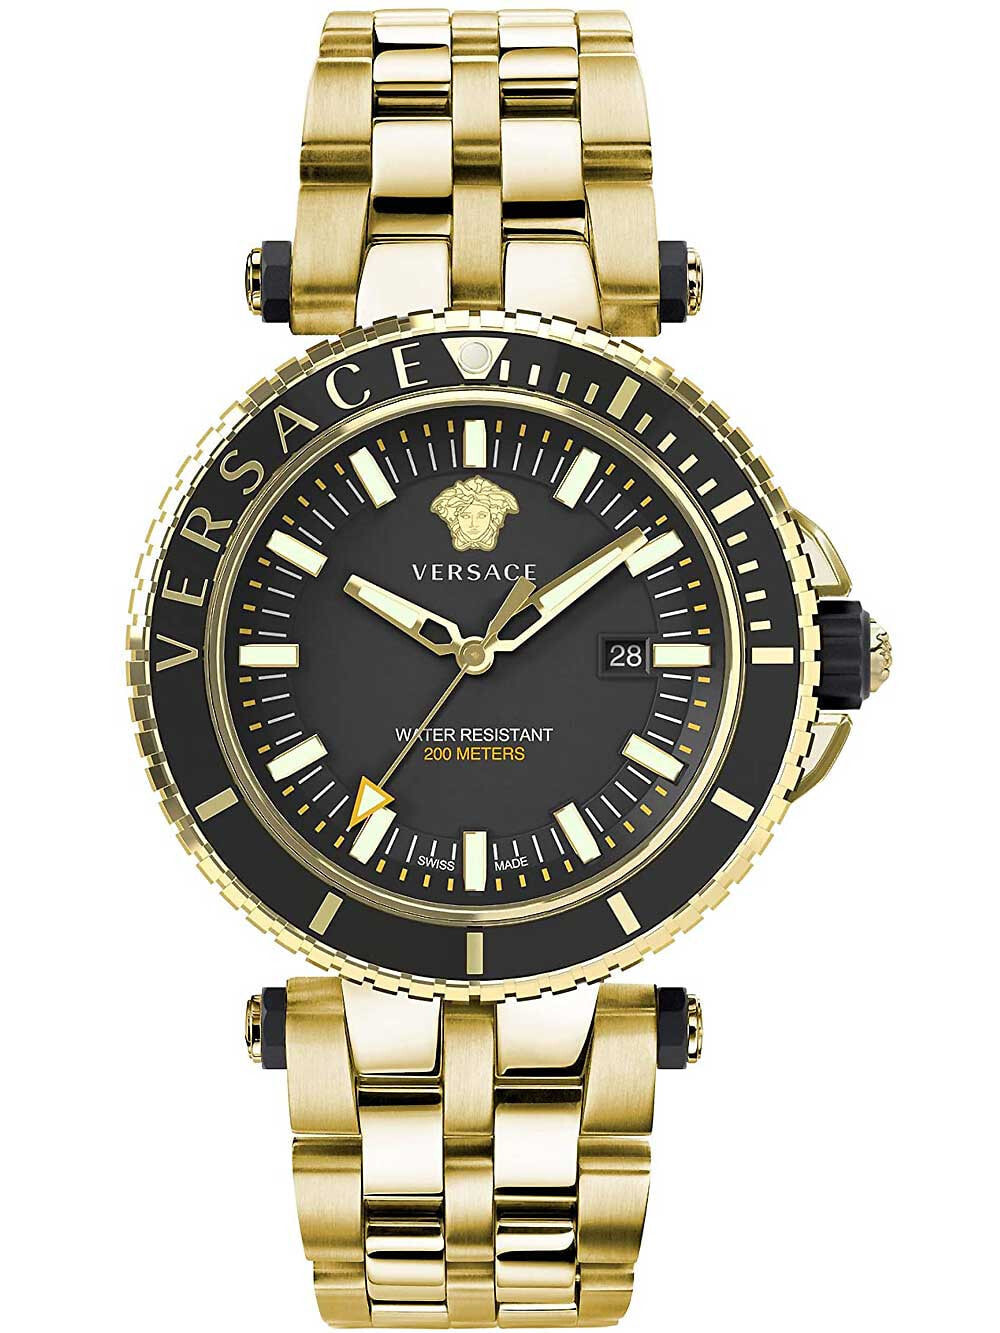 Мужские наручные часы с золотым браслетом Versace VEAK00618 V-Race mens 46mm 5ATM